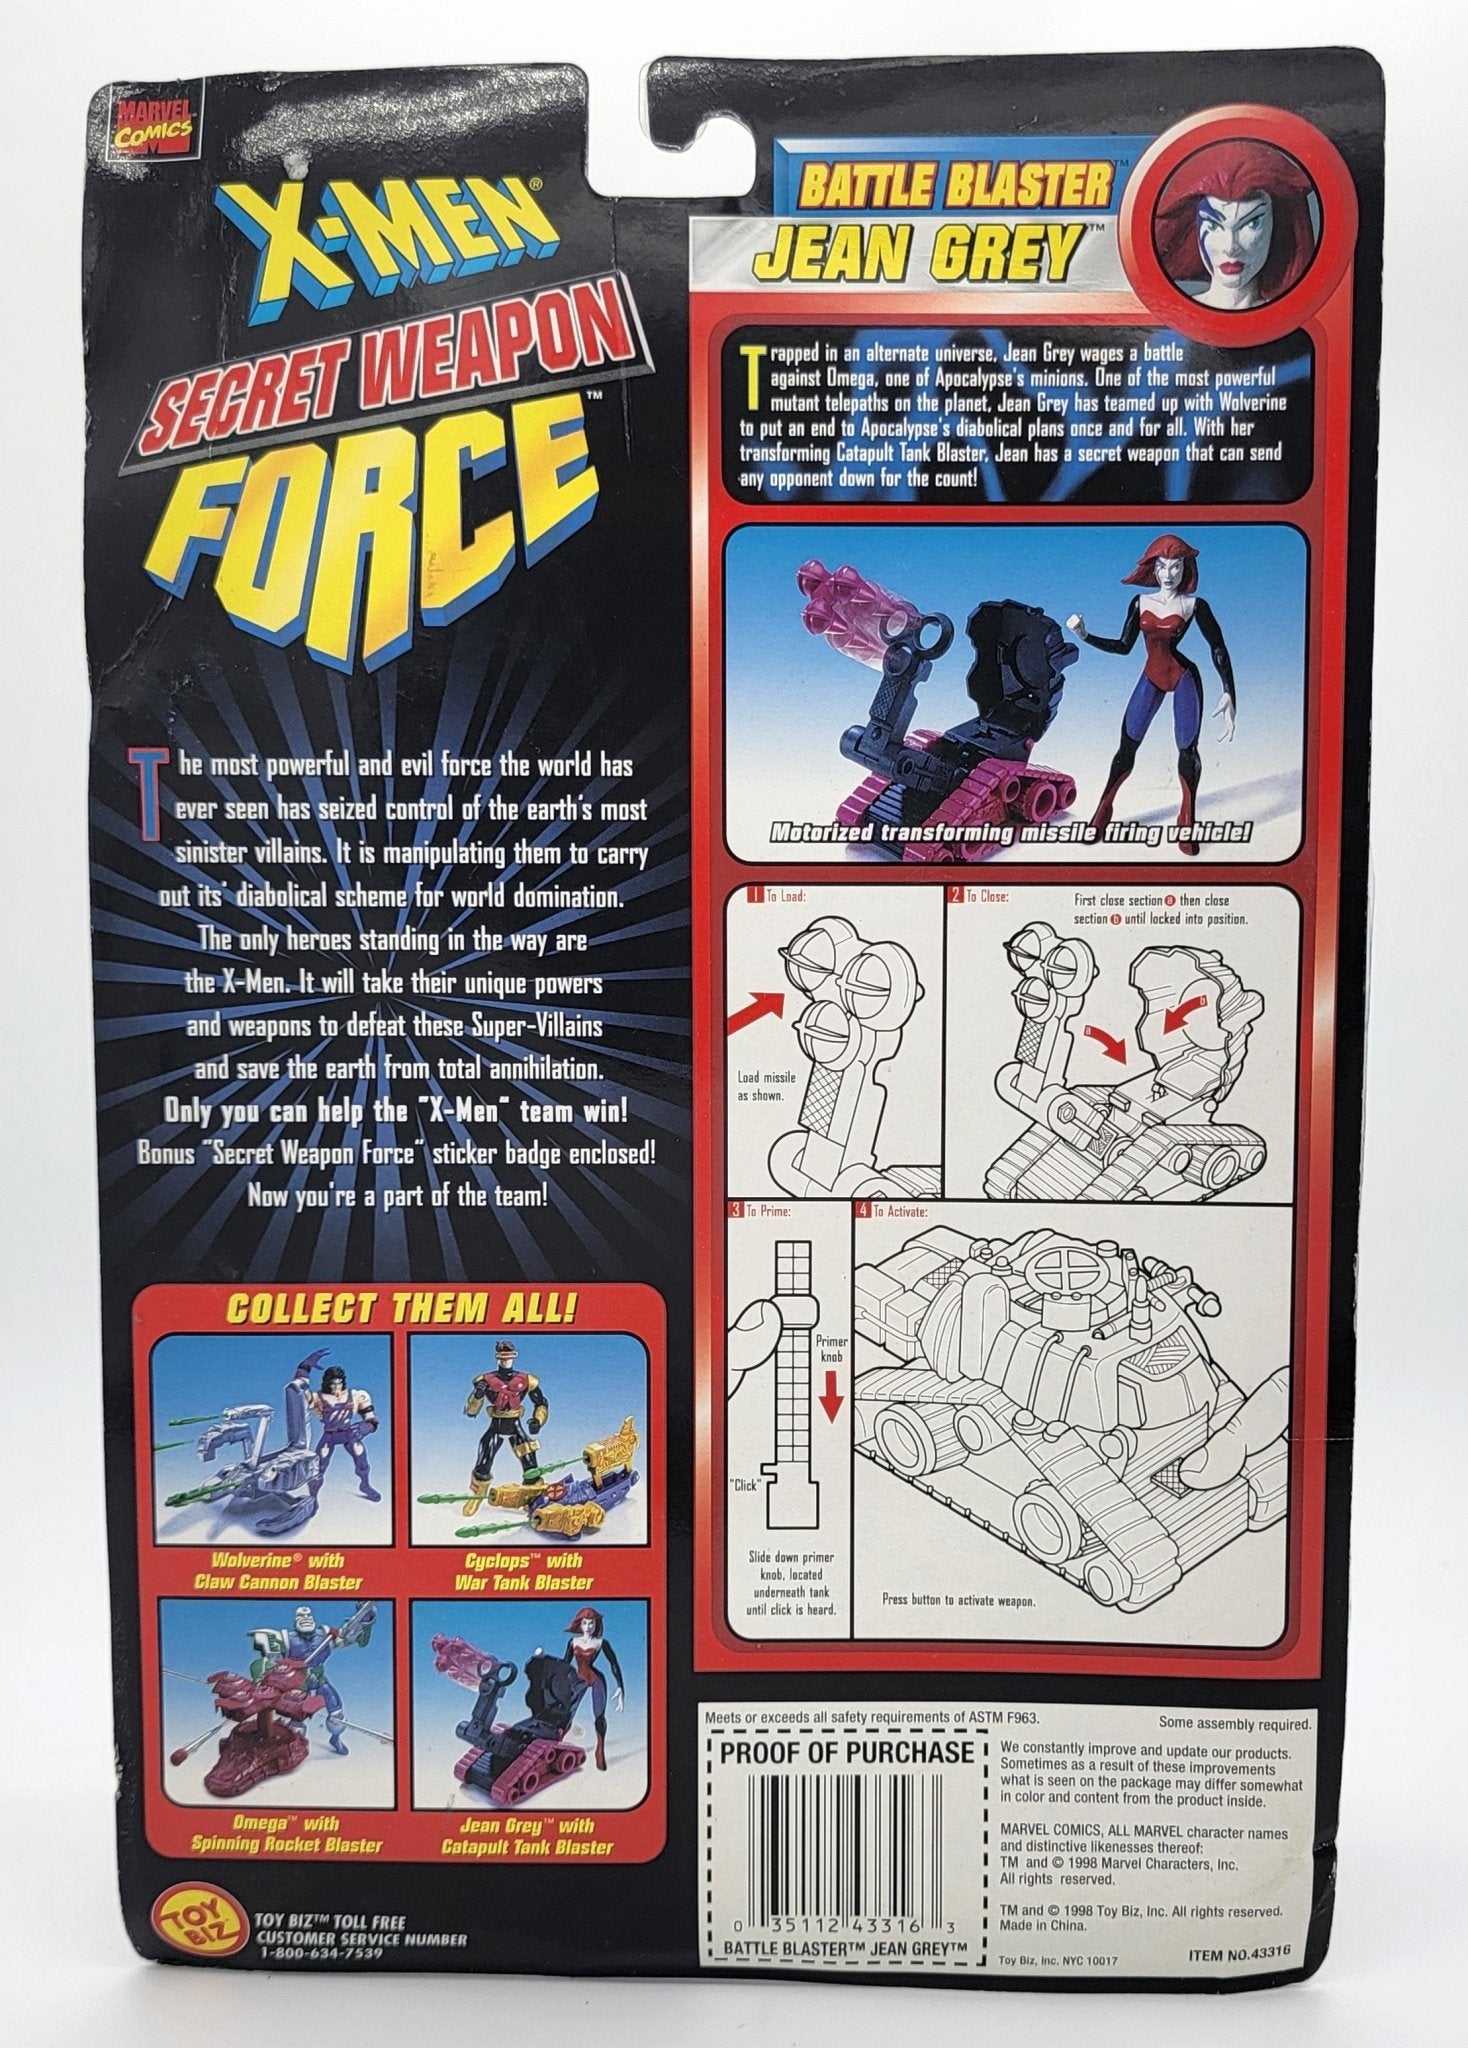 Toy Biz - Toy Biz | X-Men Secret Weapon Force - Jean Grey 1998 | Vintage Action Figure - Action Figures - Steady Bunny Shop